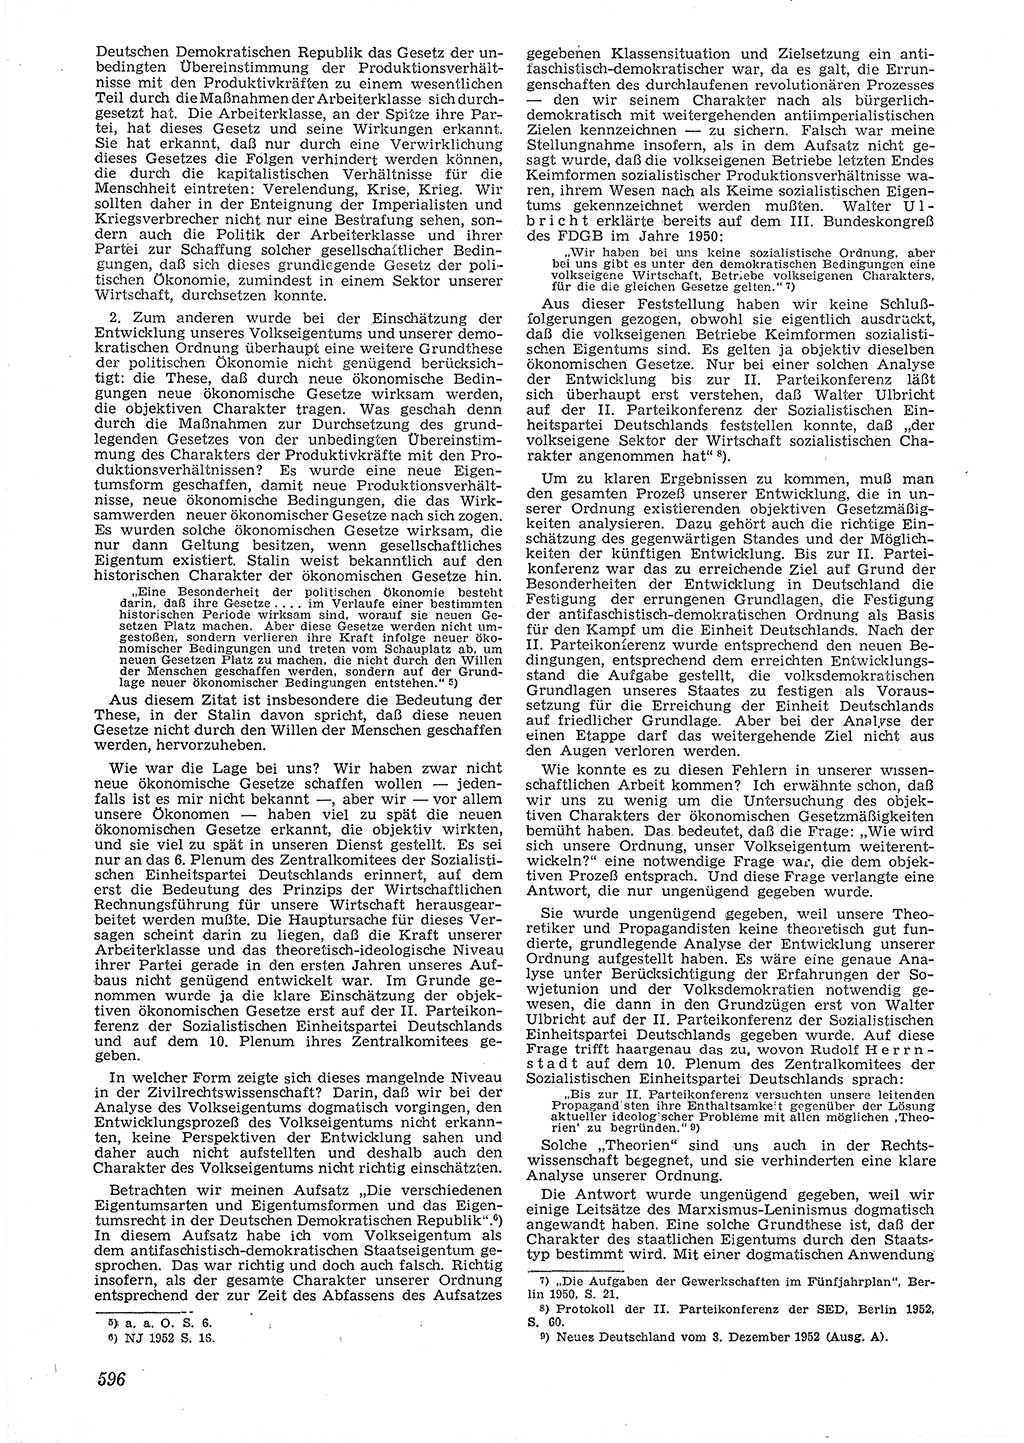 Neue Justiz (NJ), Zeitschrift für Recht und Rechtswissenschaft [Deutsche Demokratische Republik (DDR)], 6. Jahrgang 1952, Seite 596 (NJ DDR 1952, S. 596)